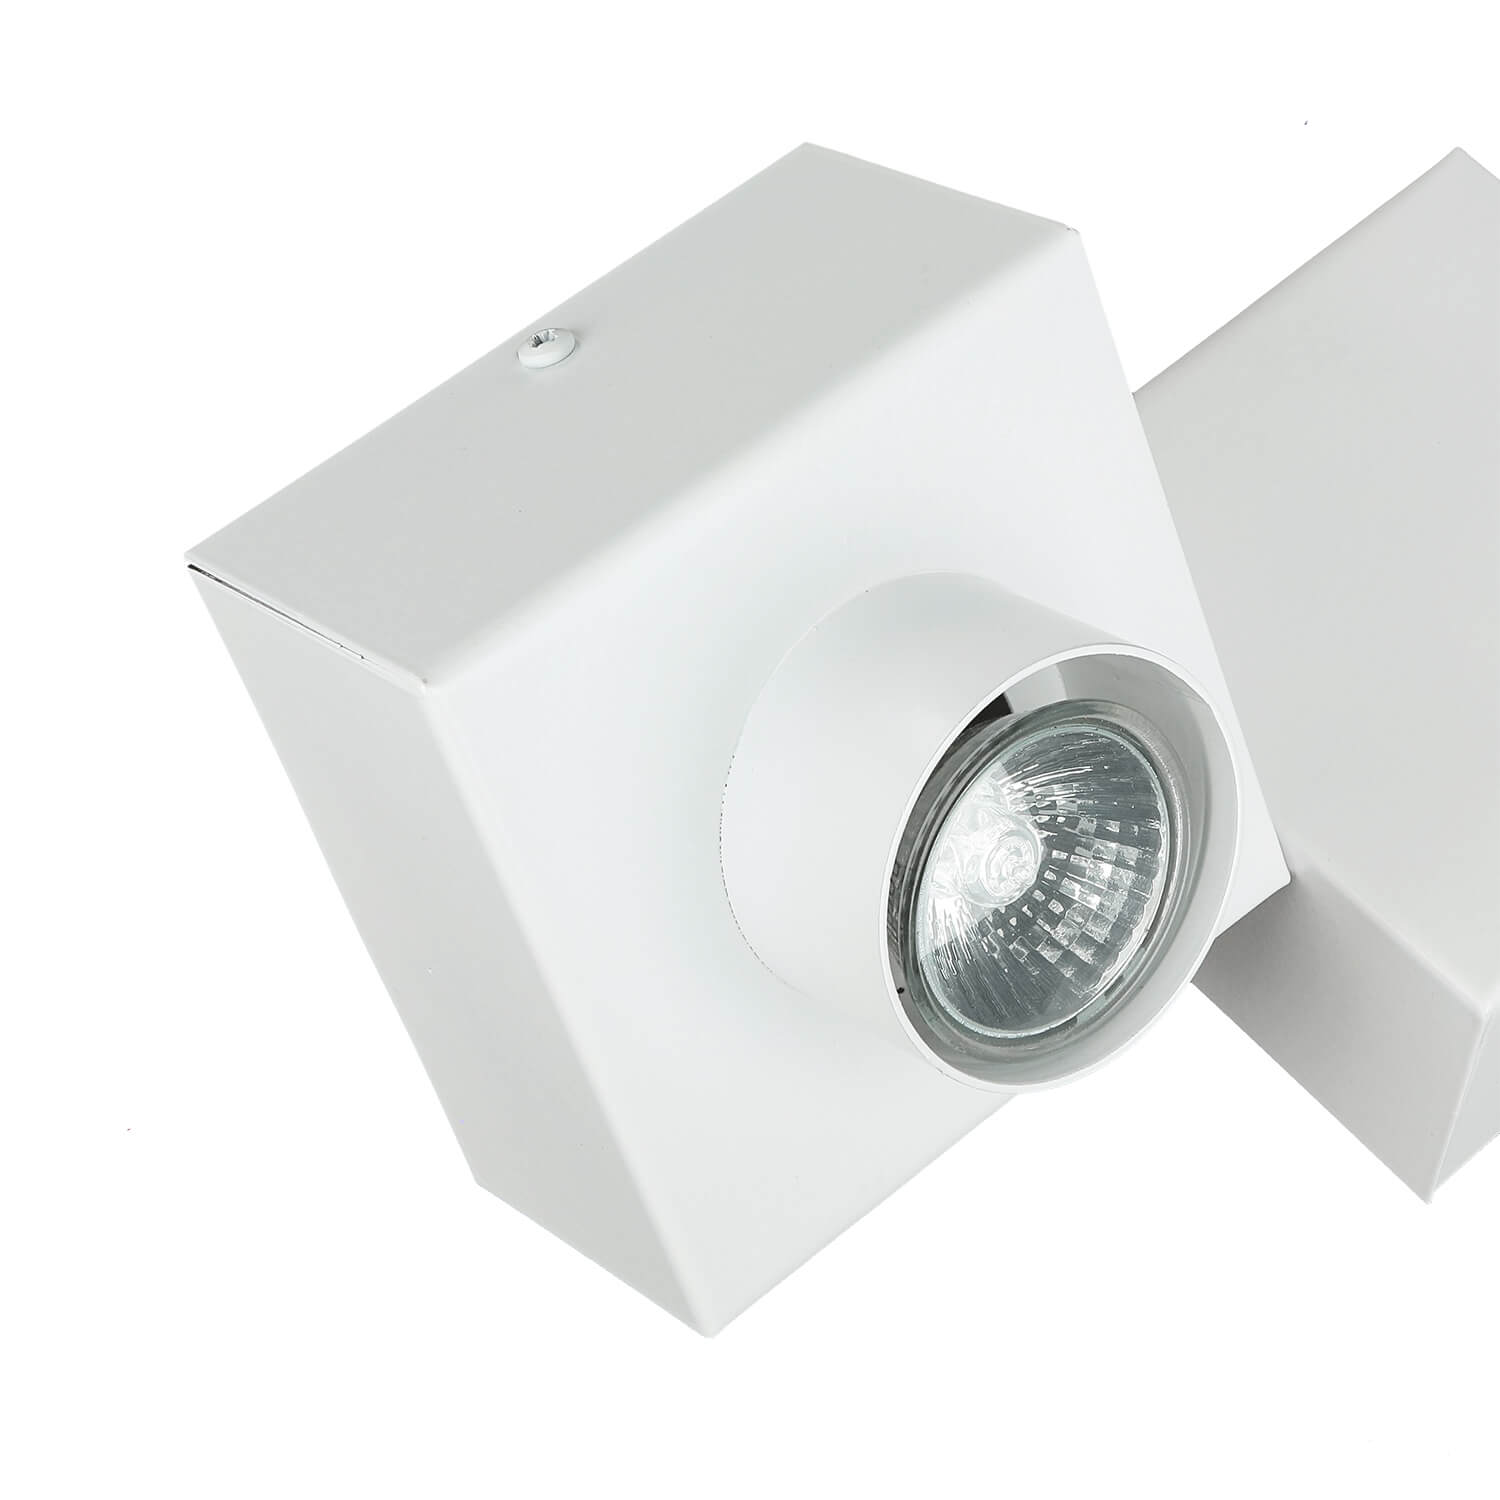 Deckenlampe Quader Design Weiß Metall 2x GU10